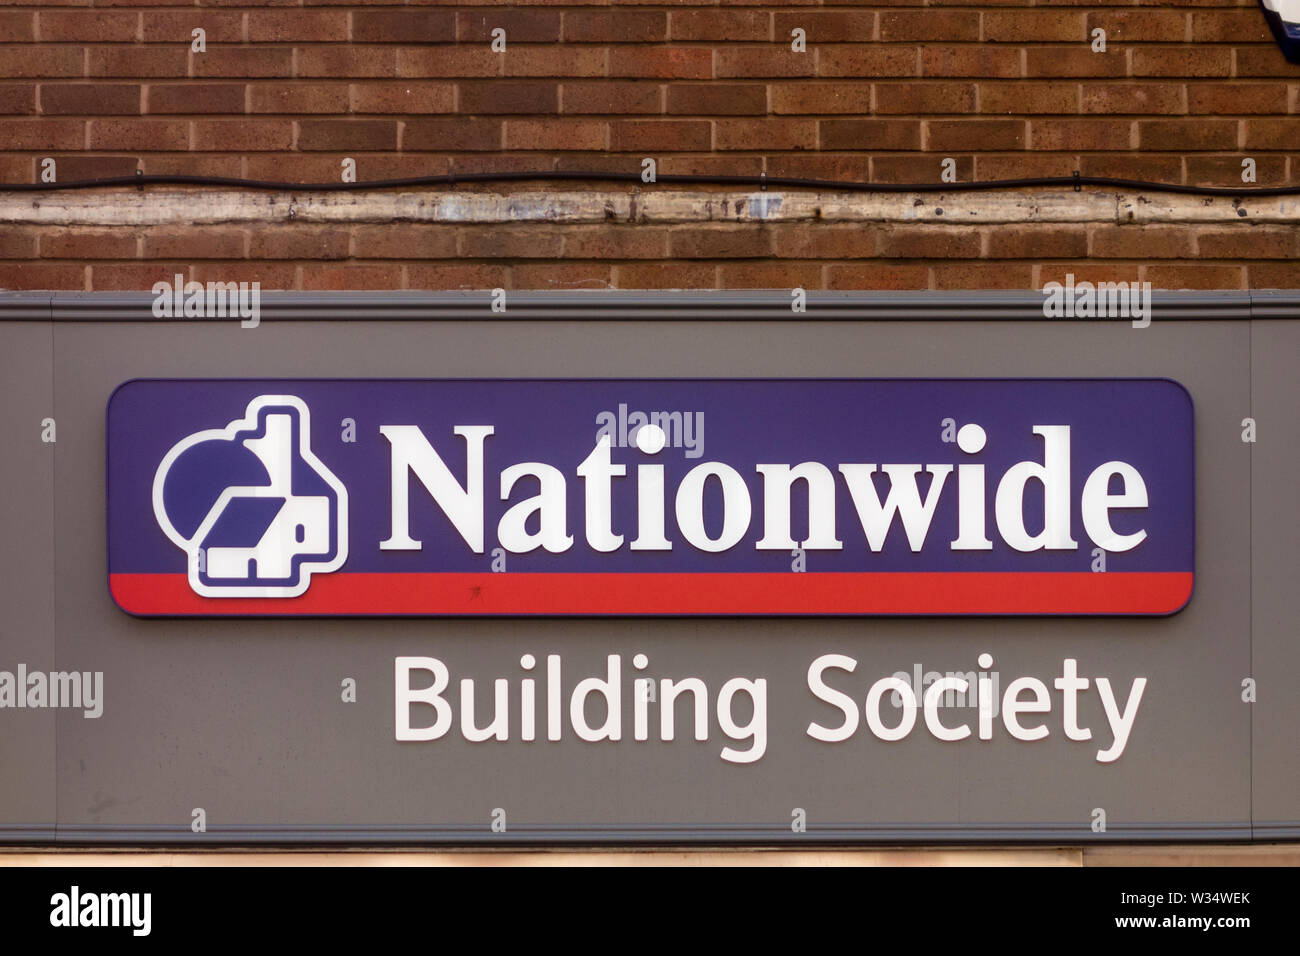 Nationwide Building Society sign, Stourbridge, West Midlands, UK Stock Photo